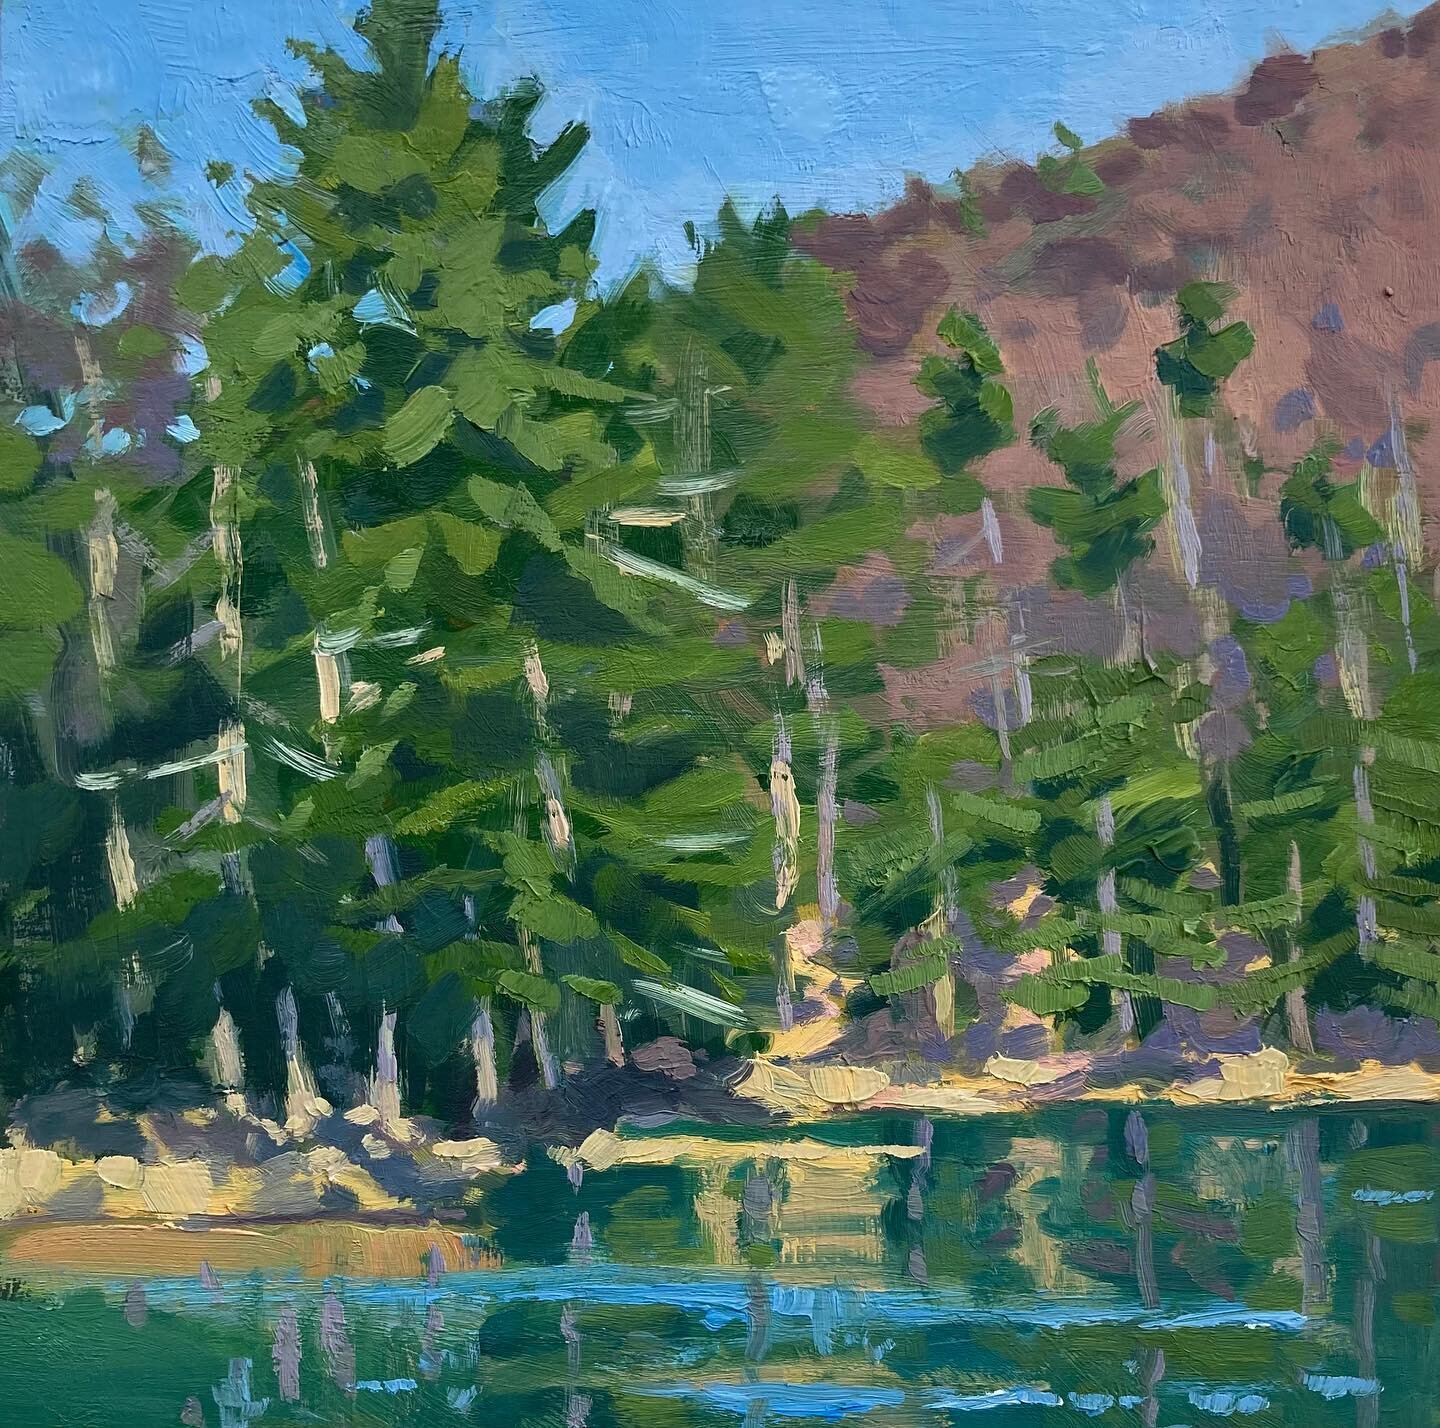 12x12 from Elkhorn Lake. 

#jeffersonnationalforest 
#georgewashingtonnationalforest 
#augustacountyva 
#paintspot 
#virginiaartist